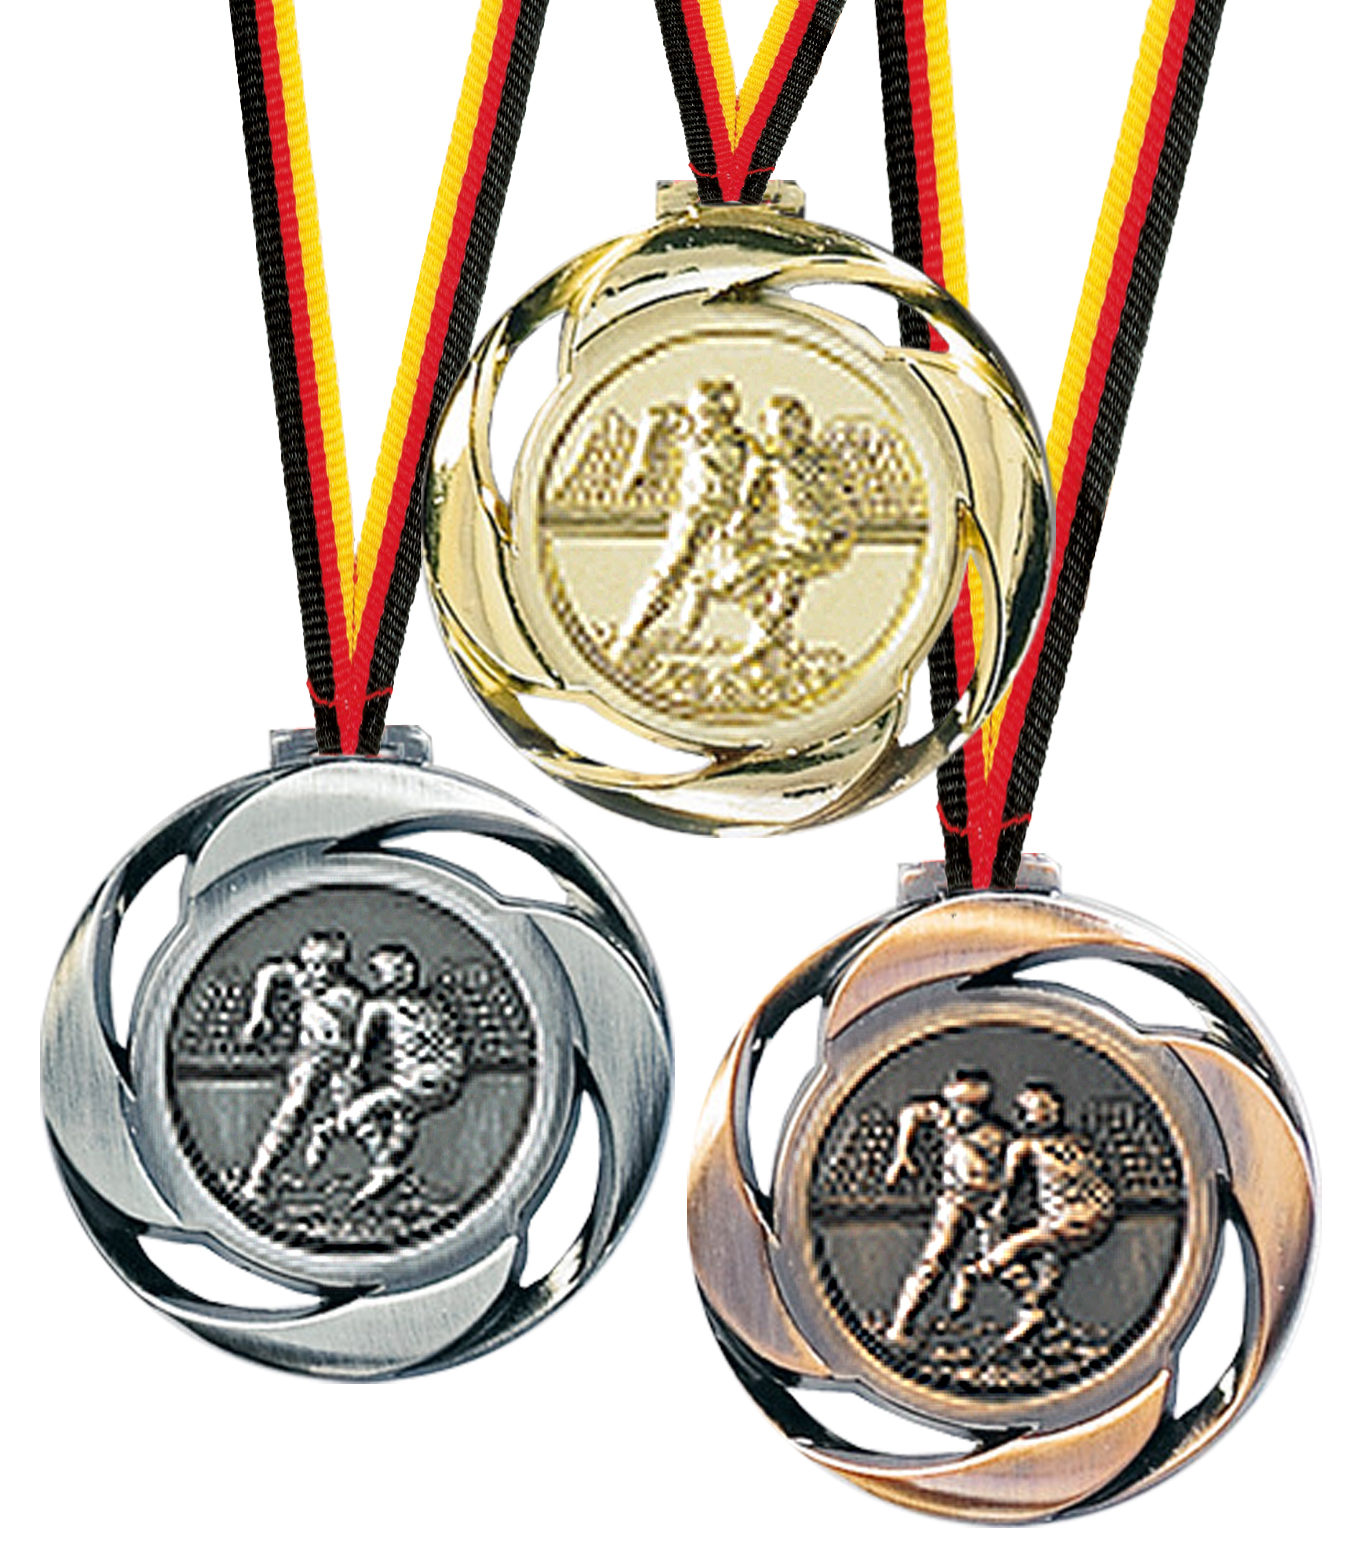 Medaille, Rugby Medaillen Premium hochwertig edel 